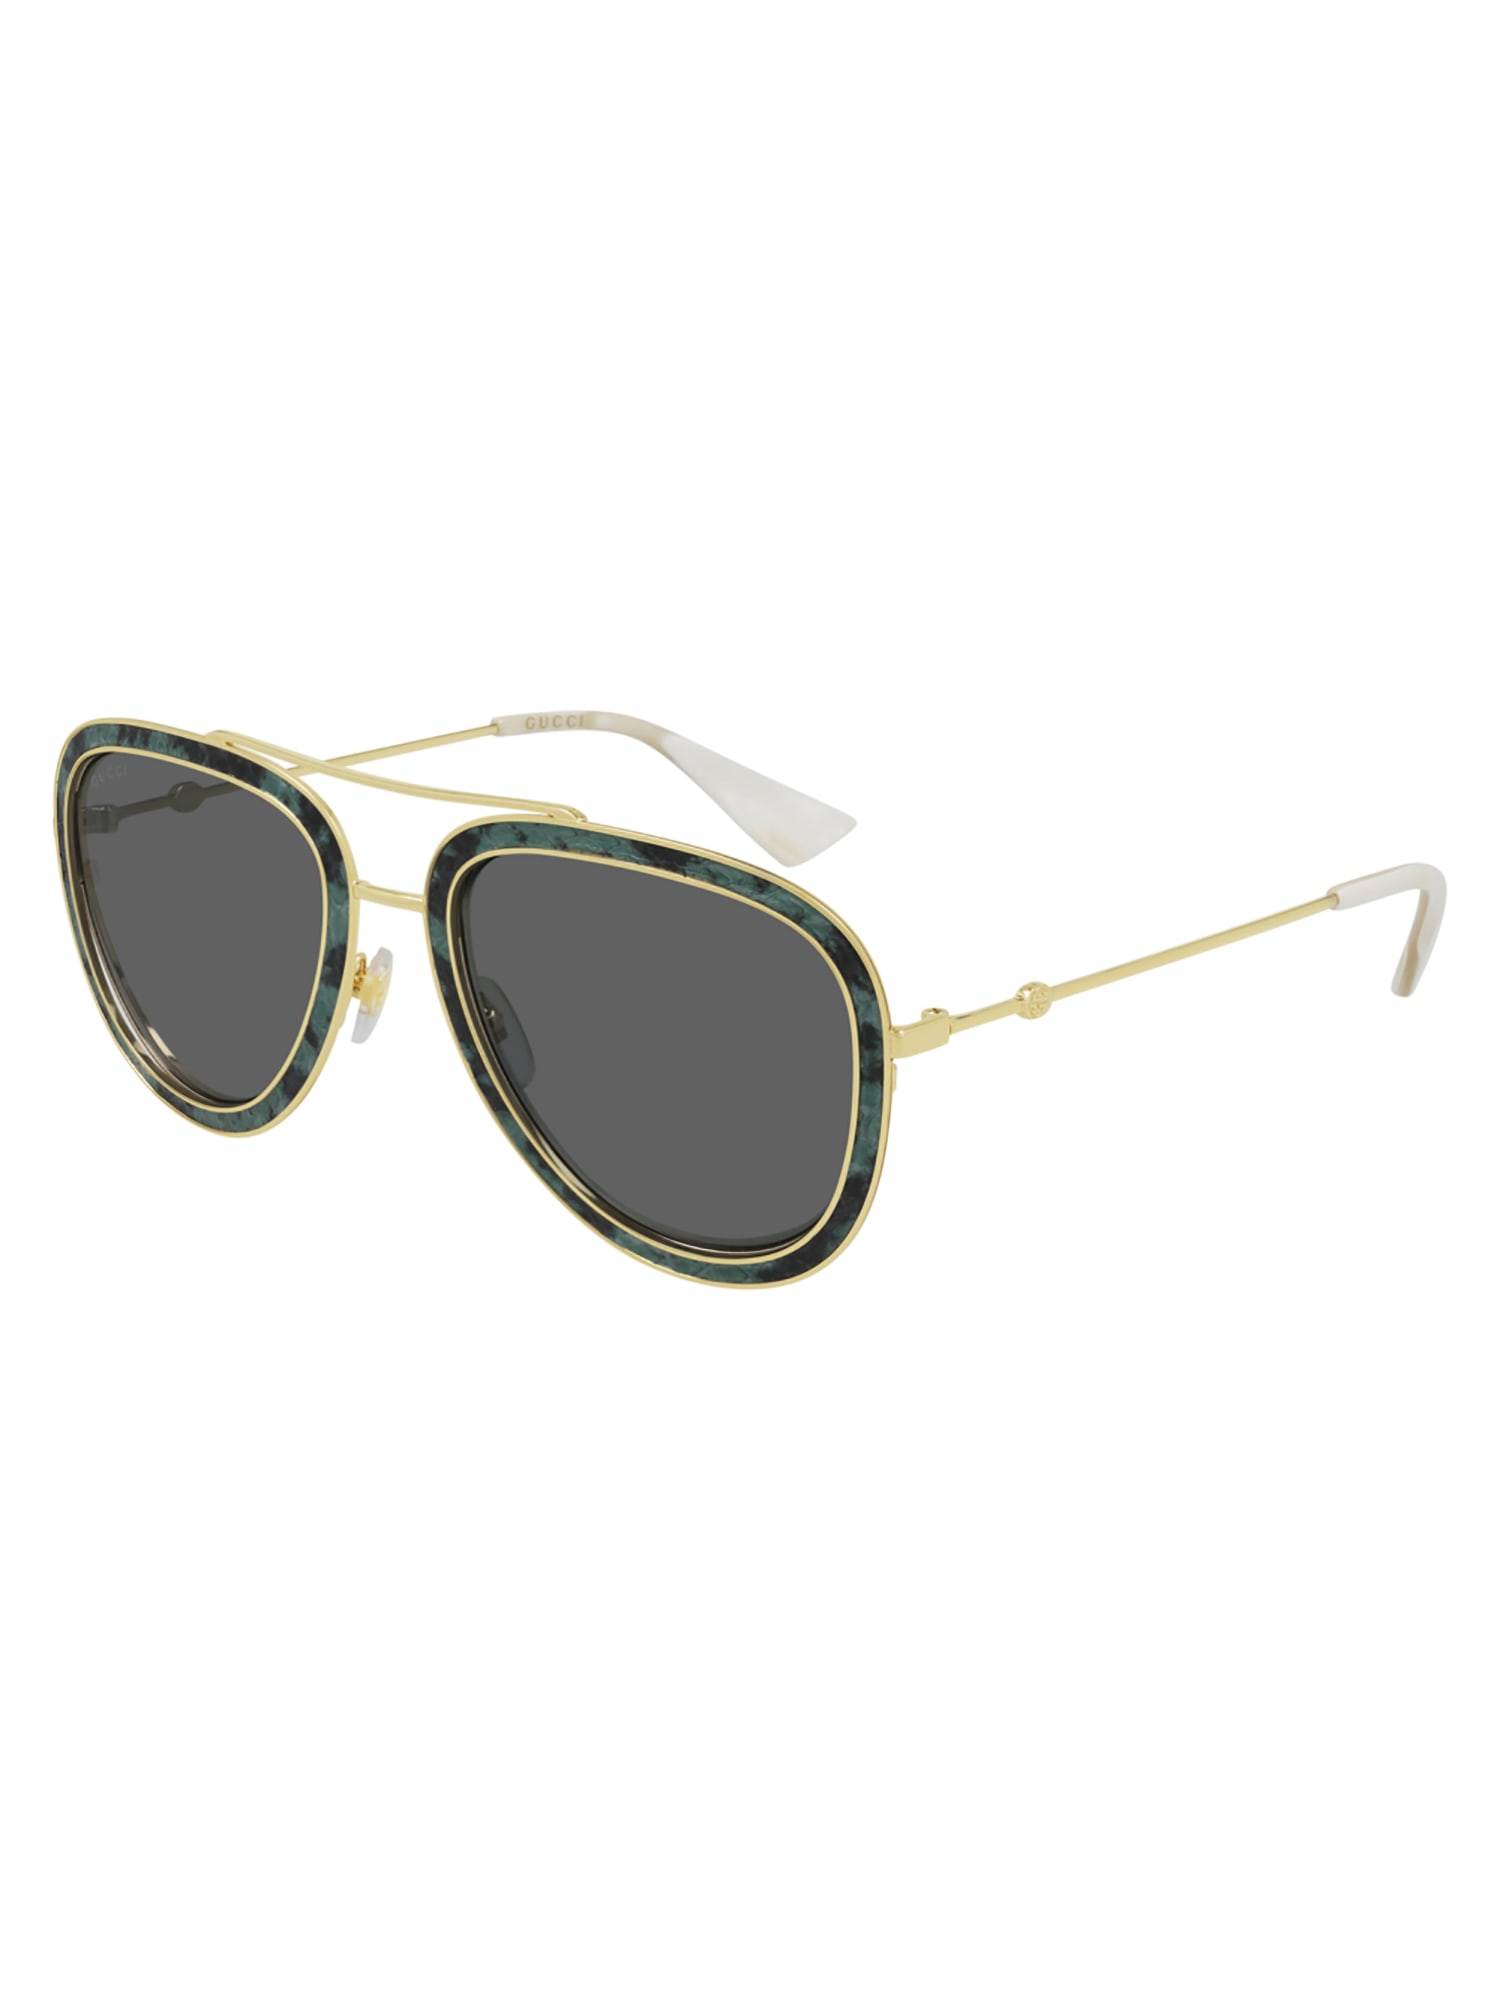 Gucci GG0062S LEATHER Sunglasses